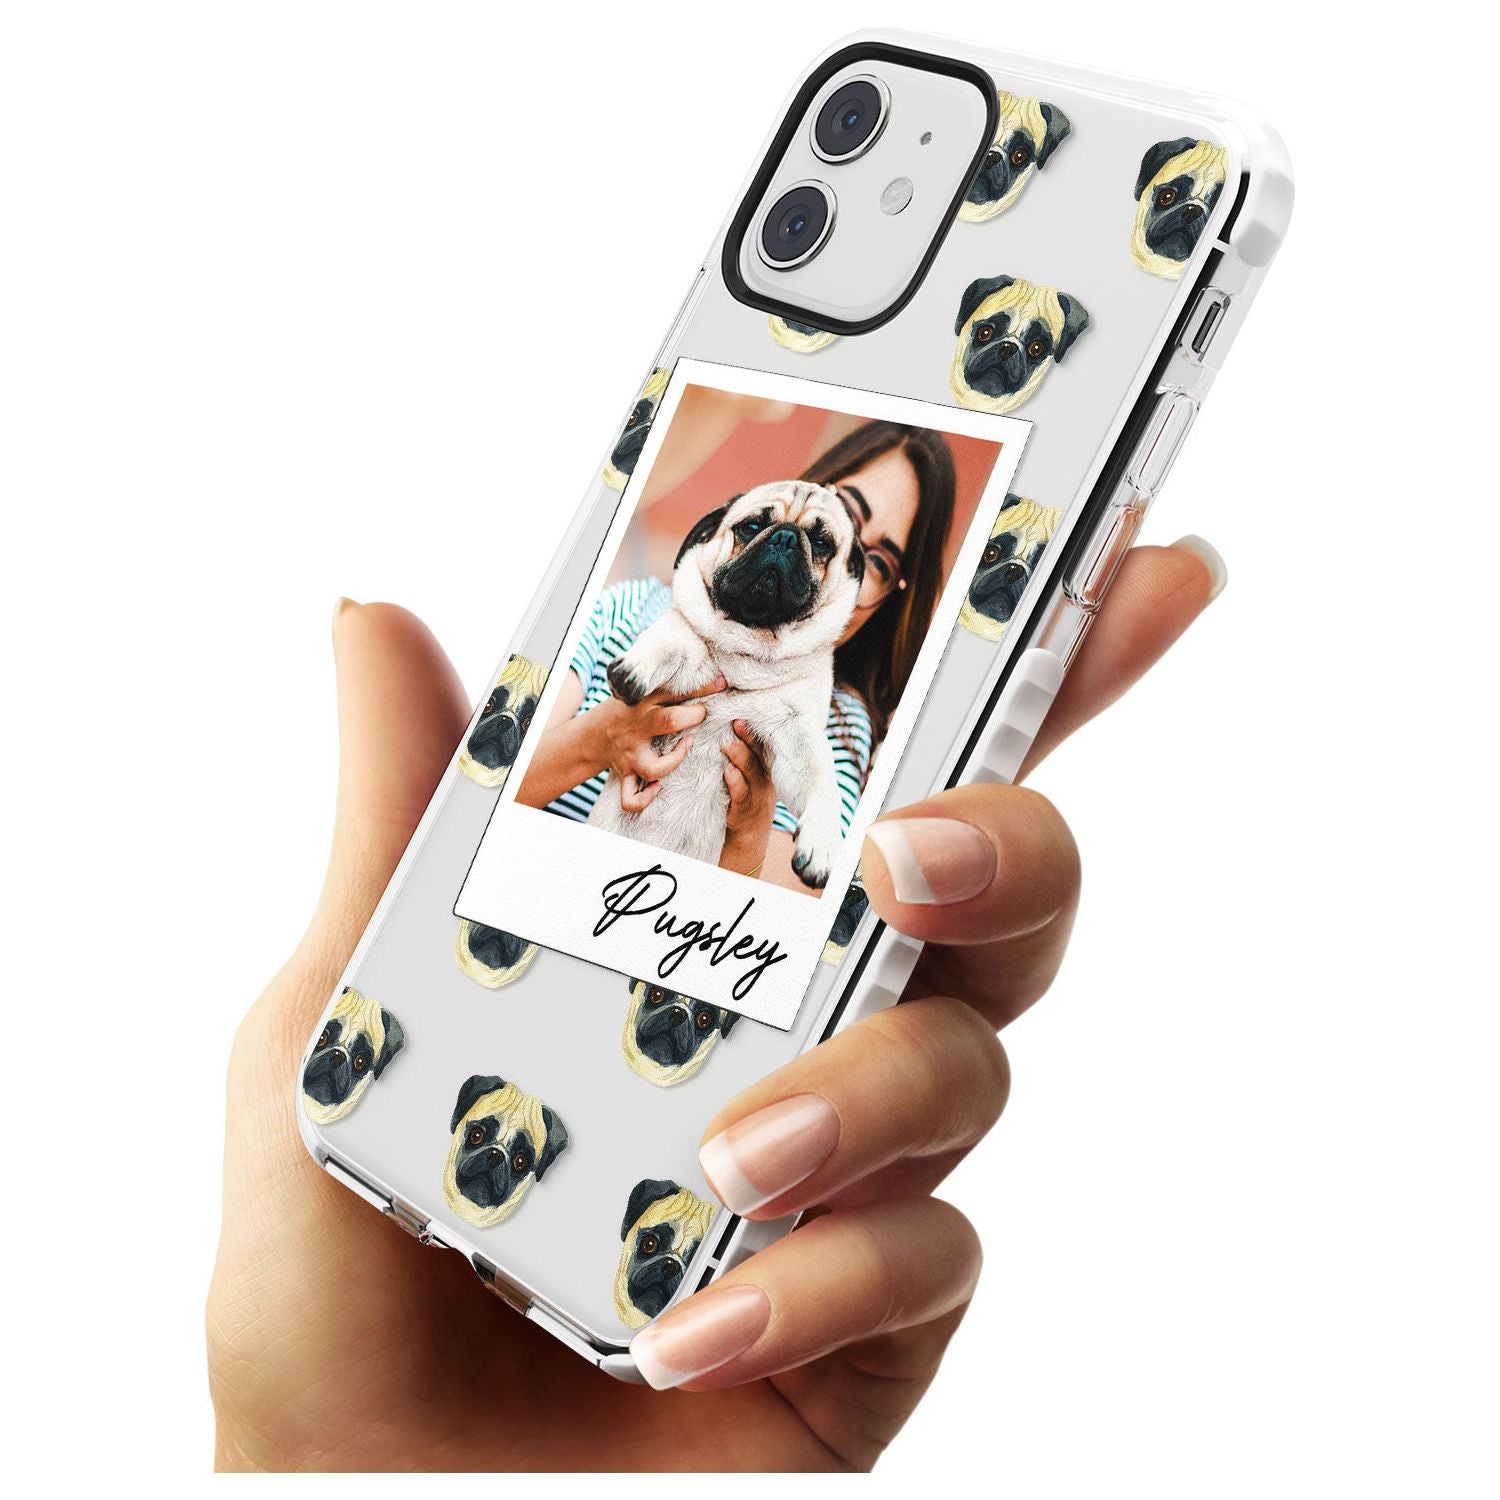 Pug - Custom Dog Photo Slim TPU Phone Case for iPhone 11